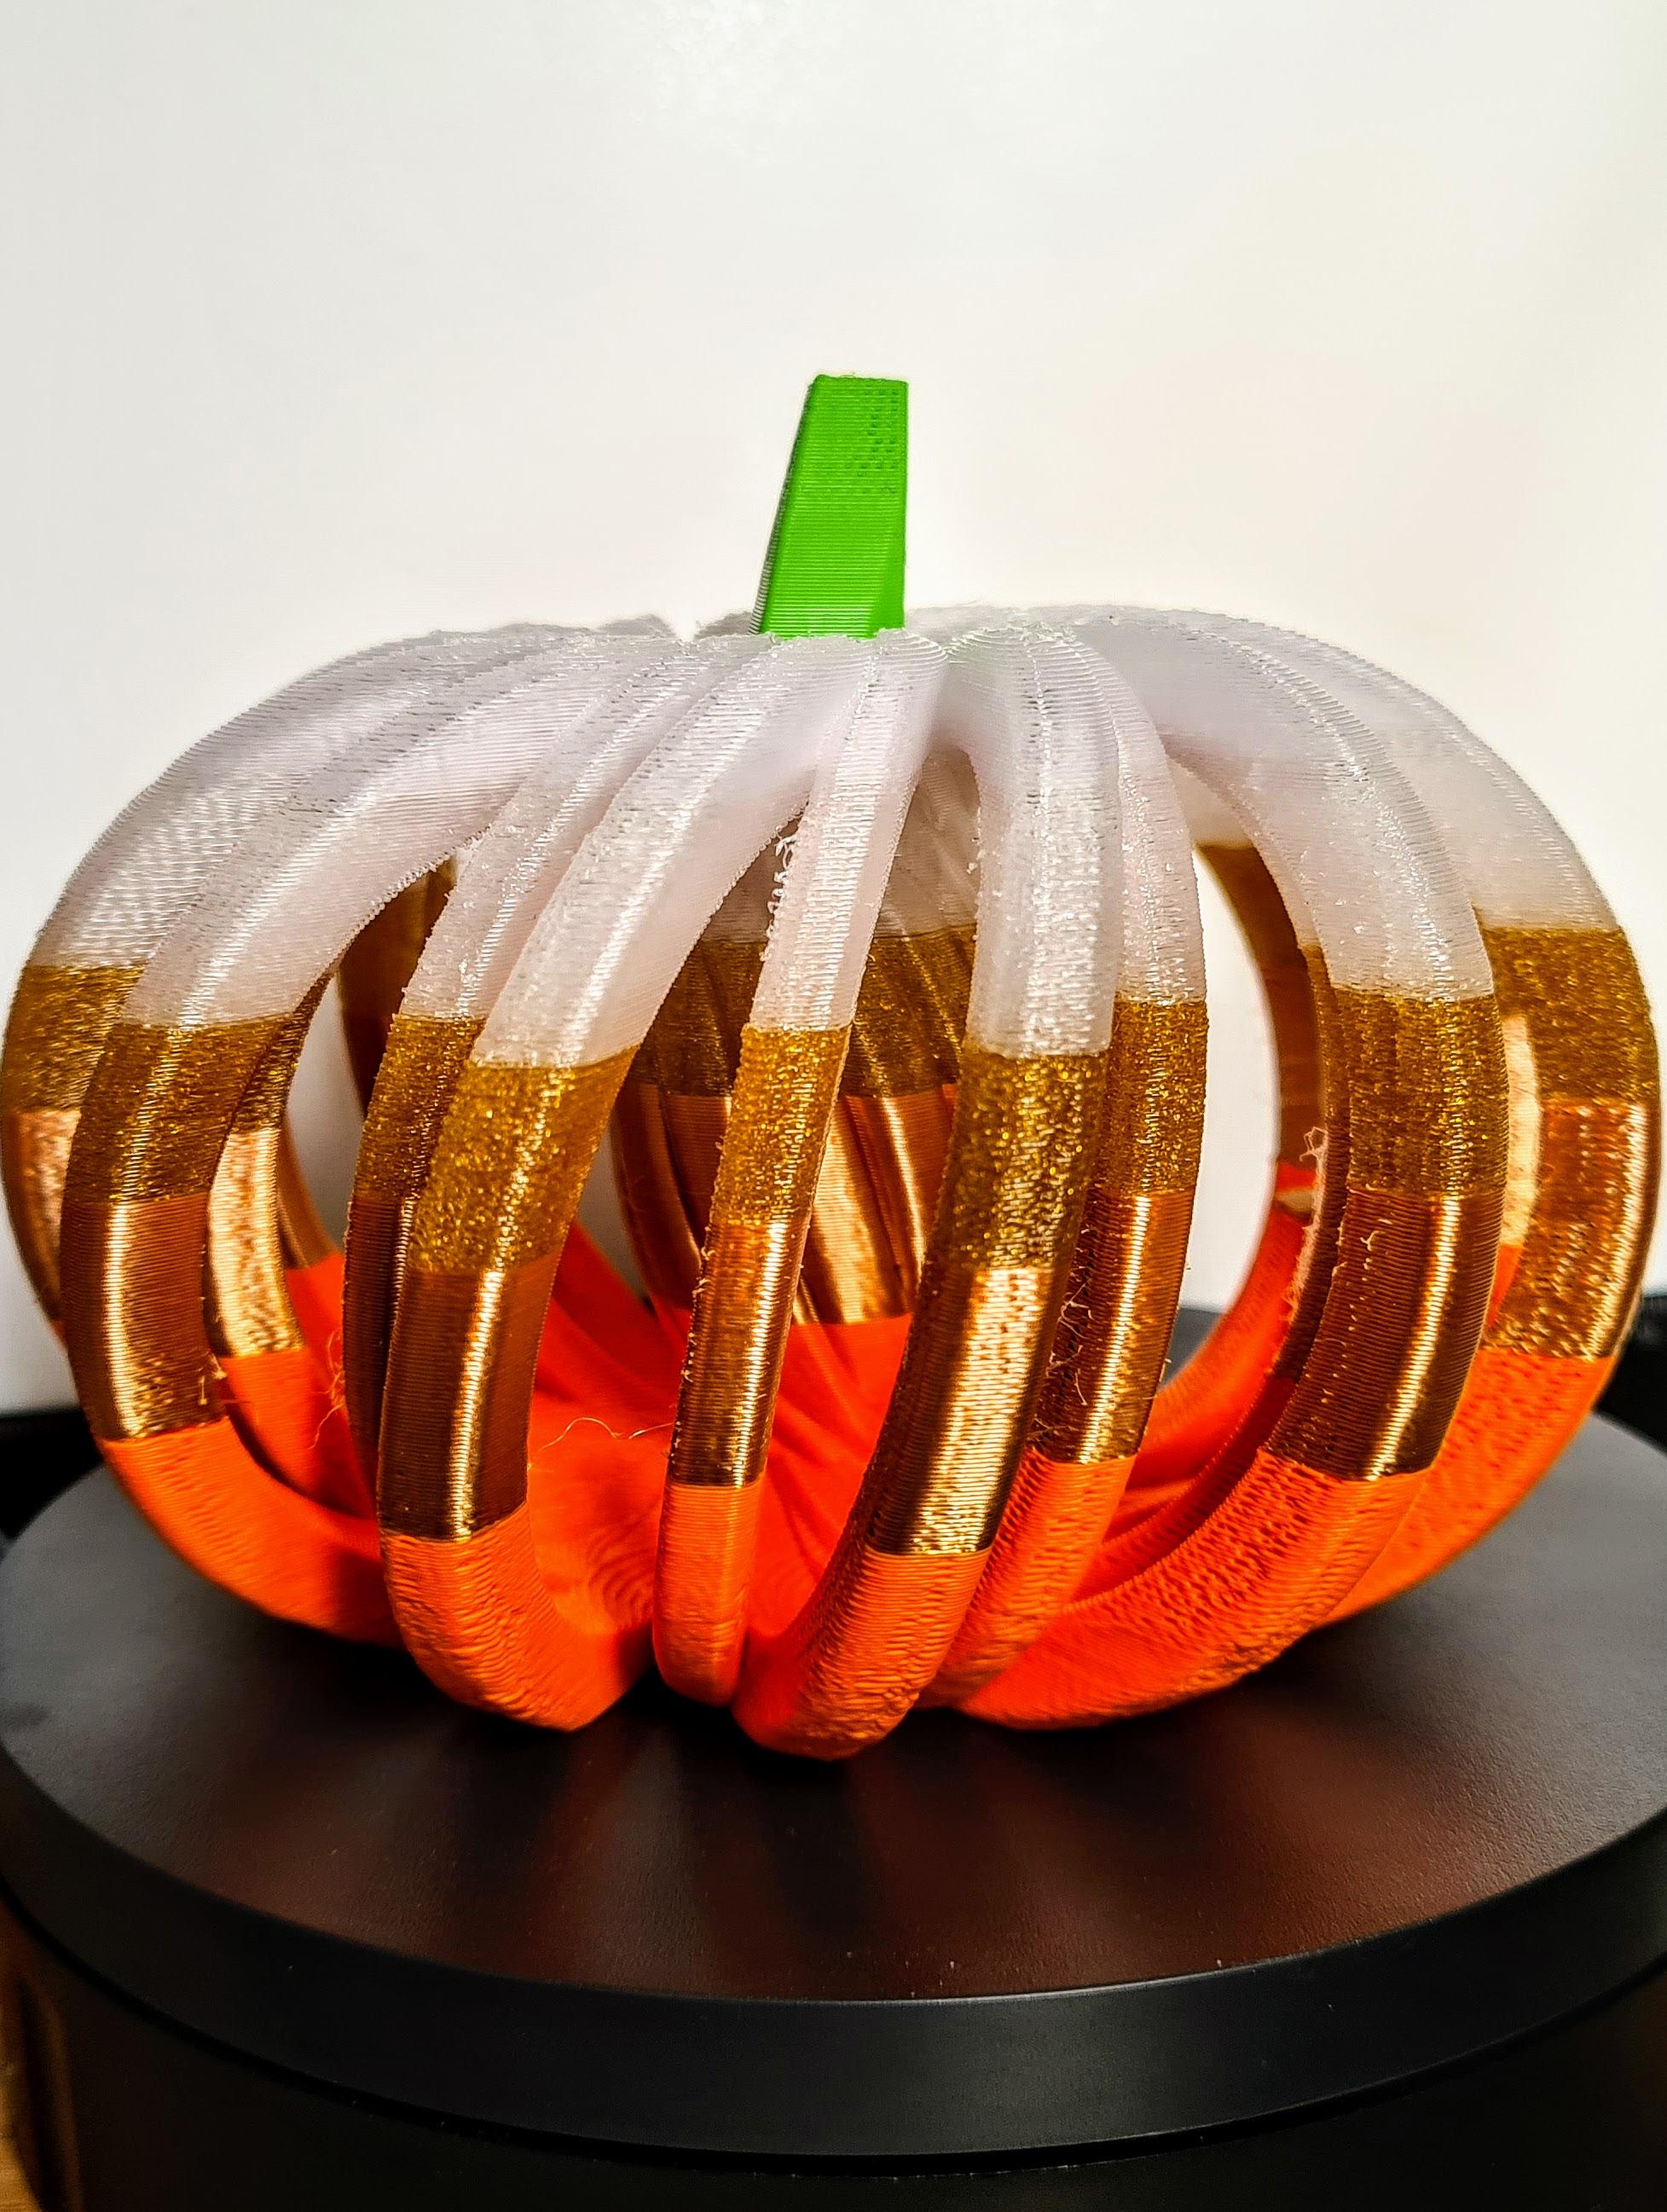 Spiral Pumpkin - Halloween Decoration 3d model